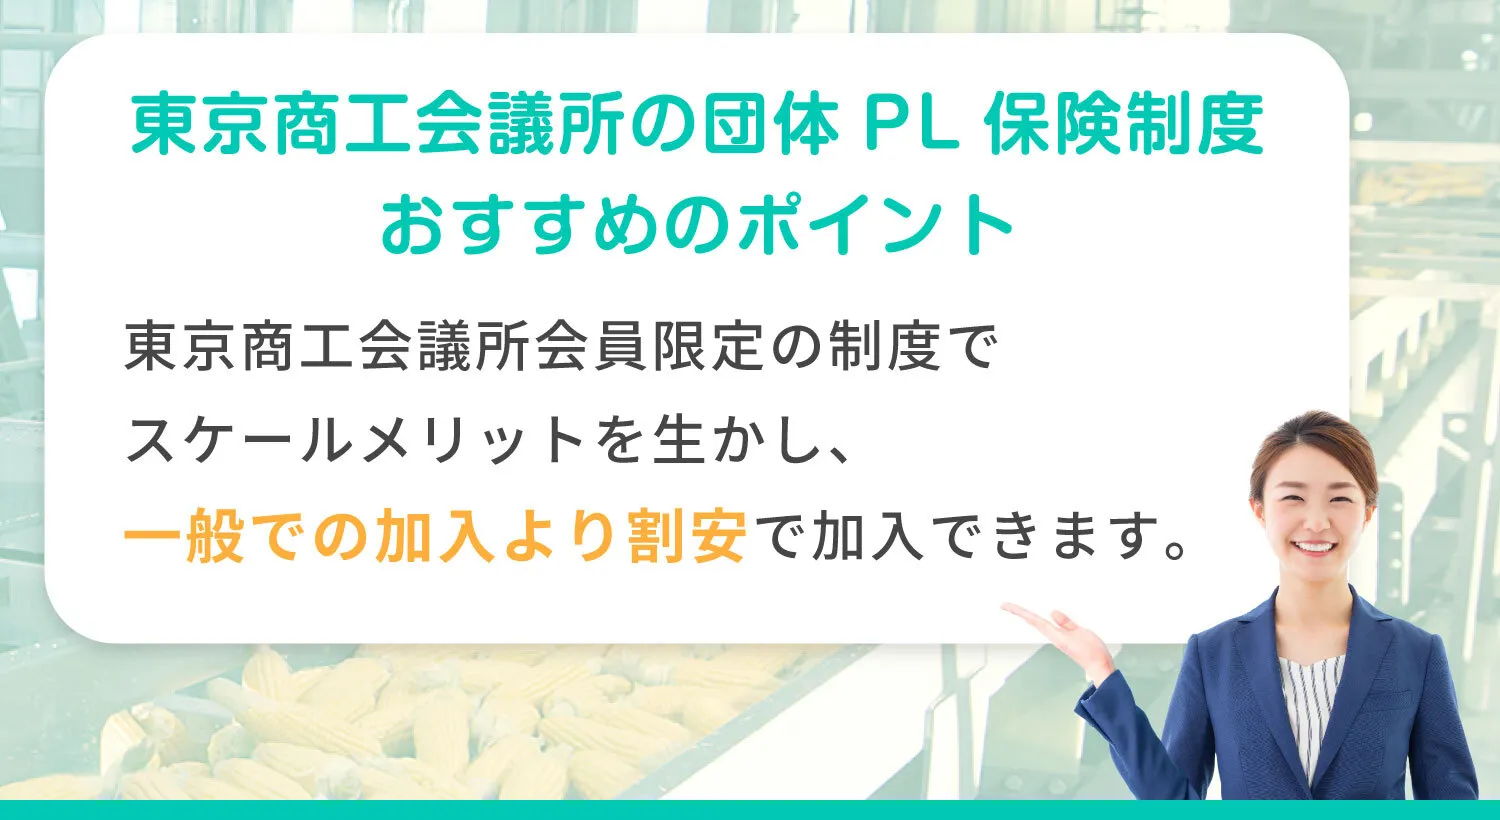 東京商工会議所の団体 PL保険制度 おすすめのポイント 東京商工会議所会員限定の制度でスケールメリットを生かし、一般での加入より割安で加入できます。